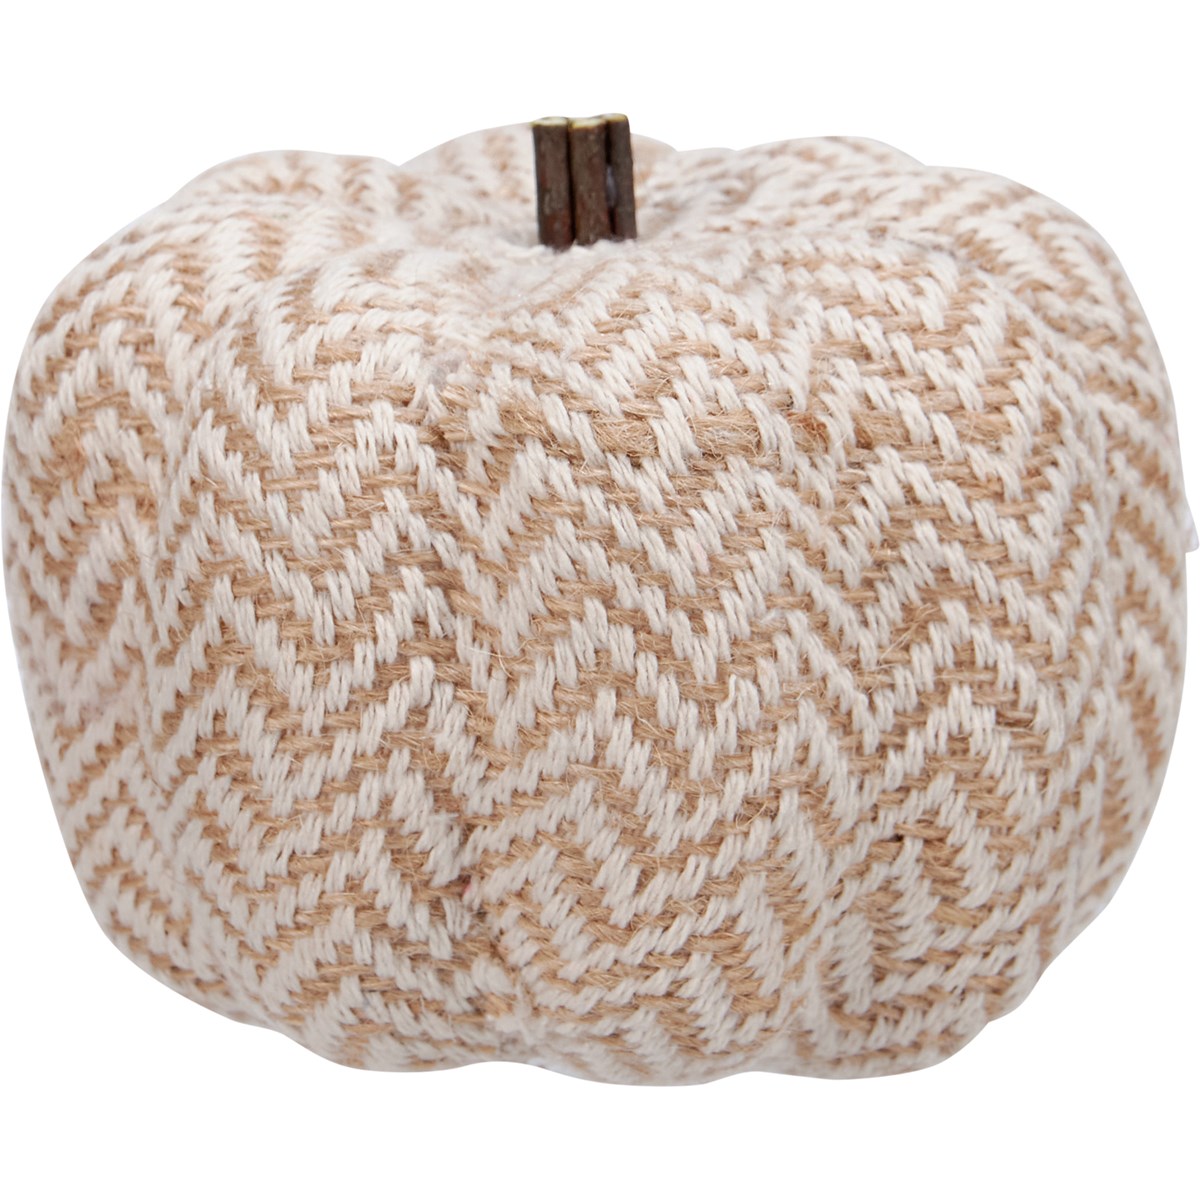 Knitted Pumpkin Set - Foam, Yarn, Plastic, Jute